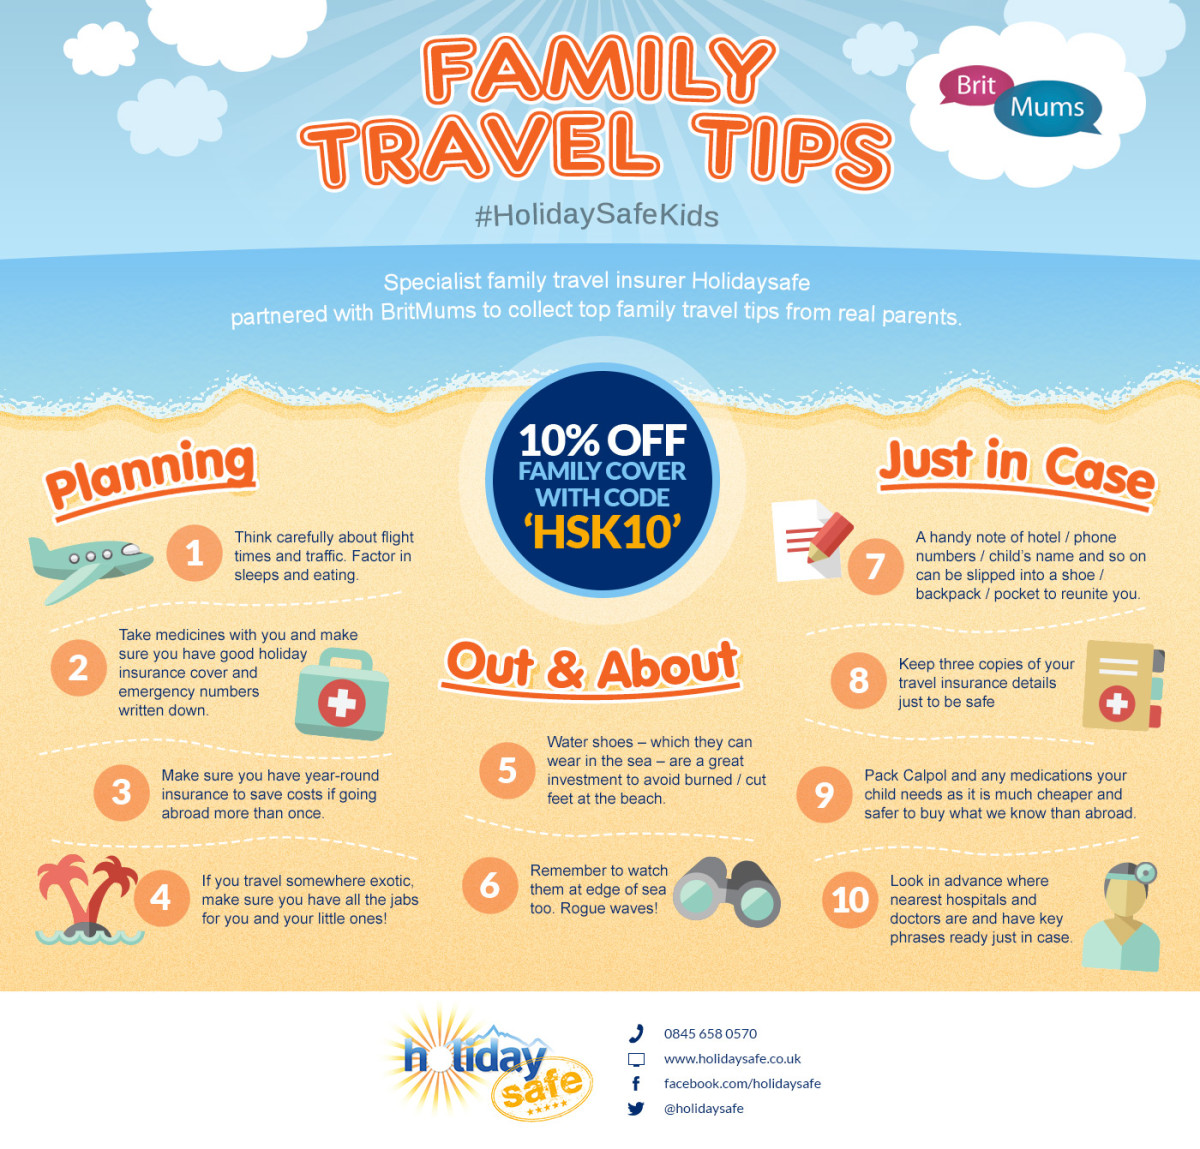 Family travel tips